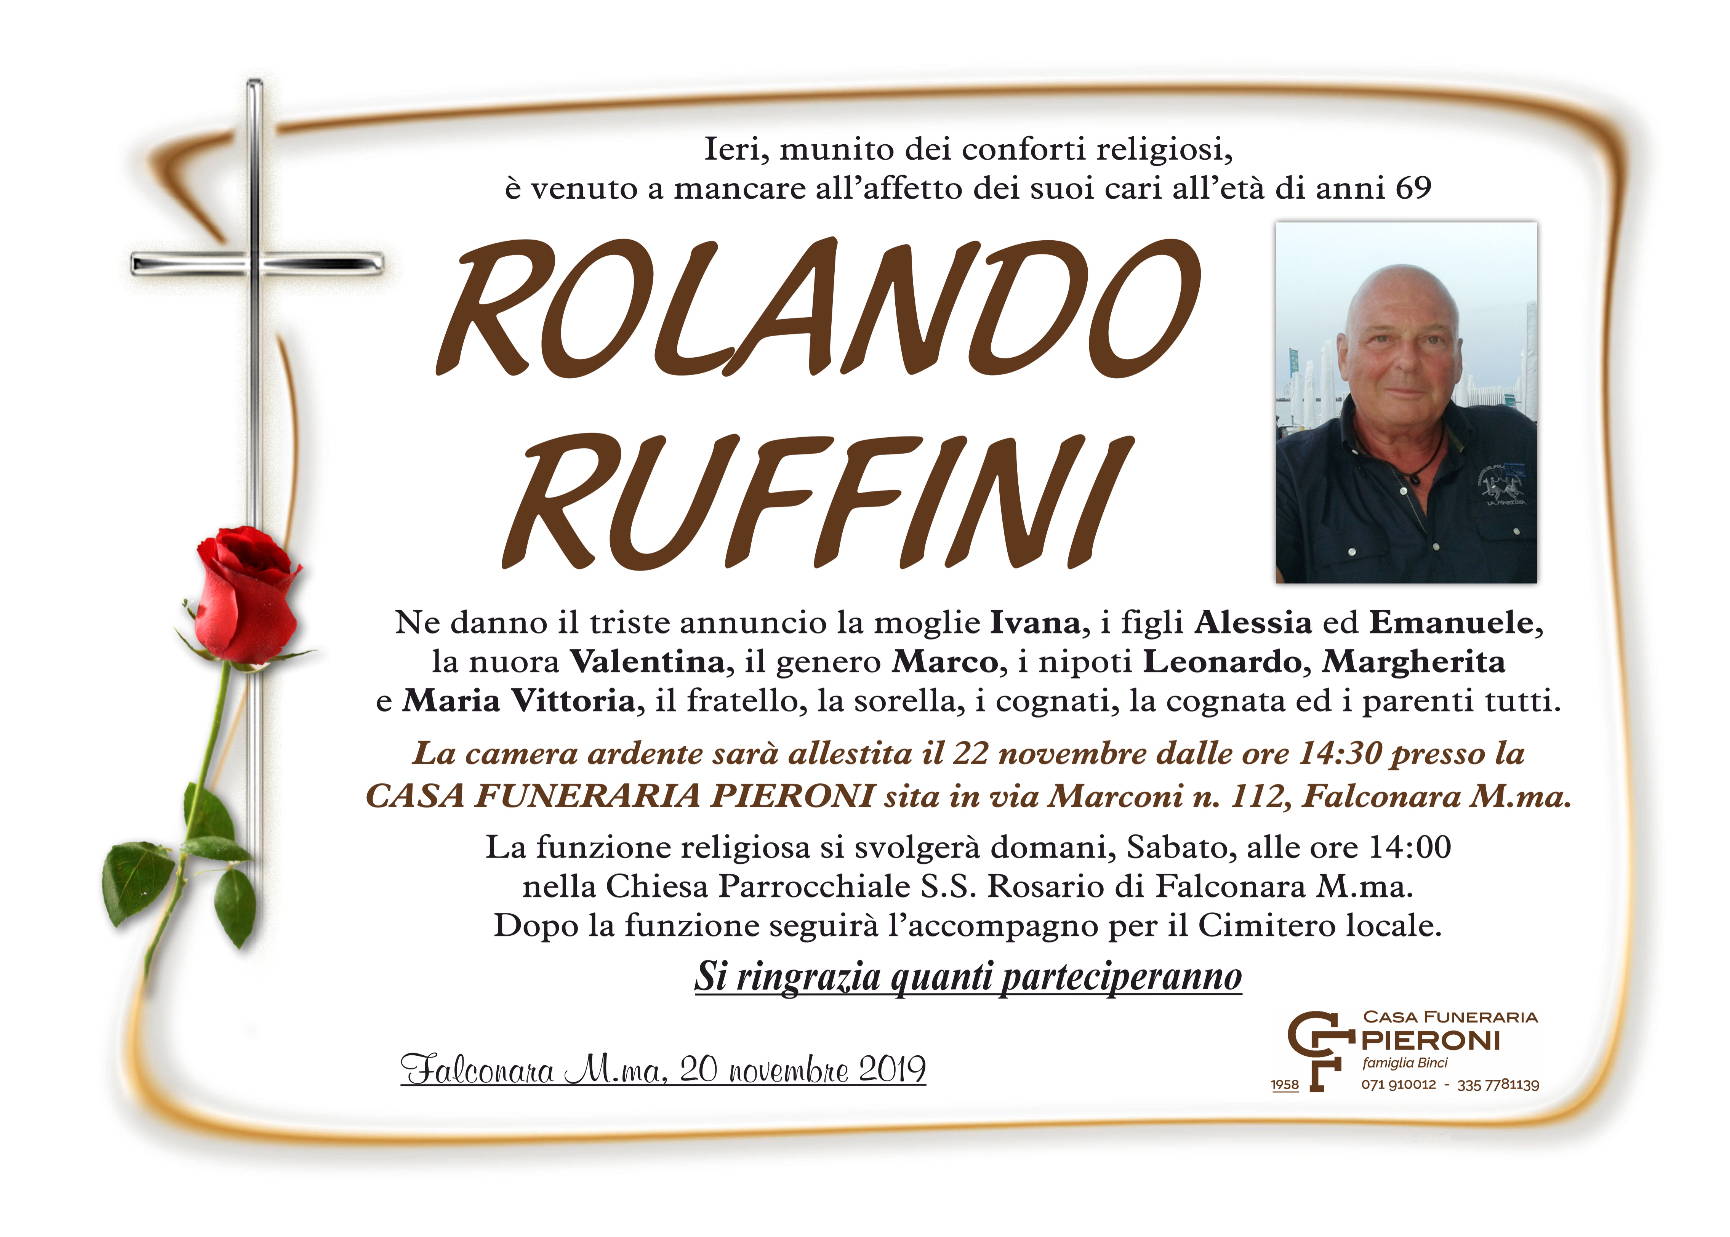 Rolando Ruffini